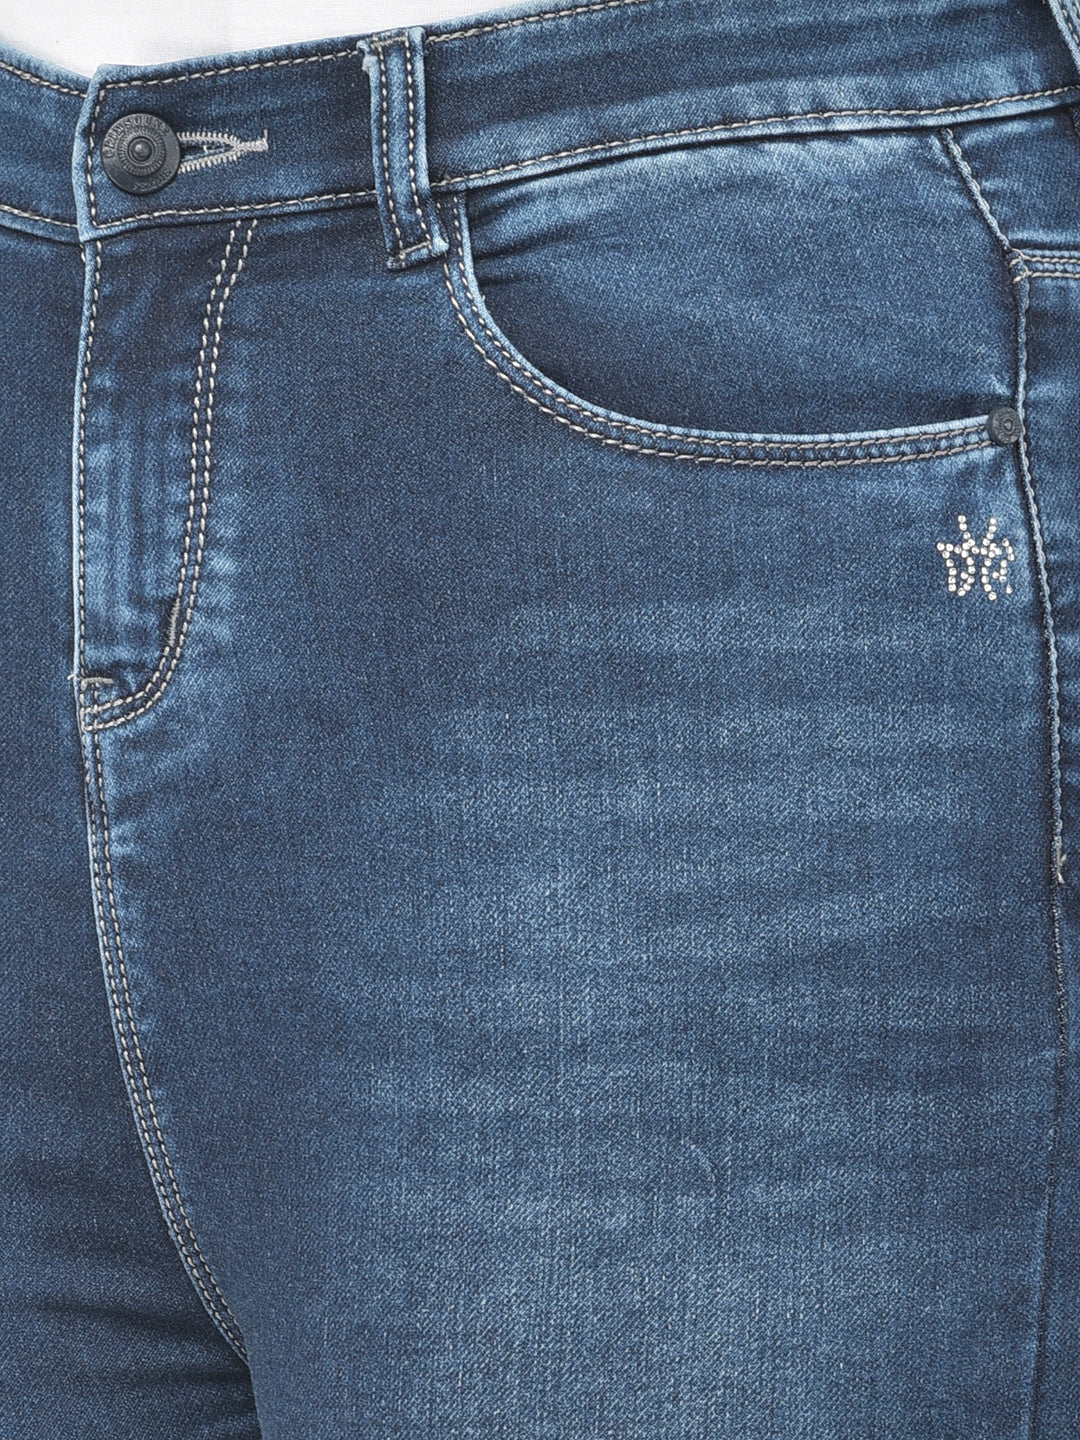 Blue High Waist jeans - Women Jeans